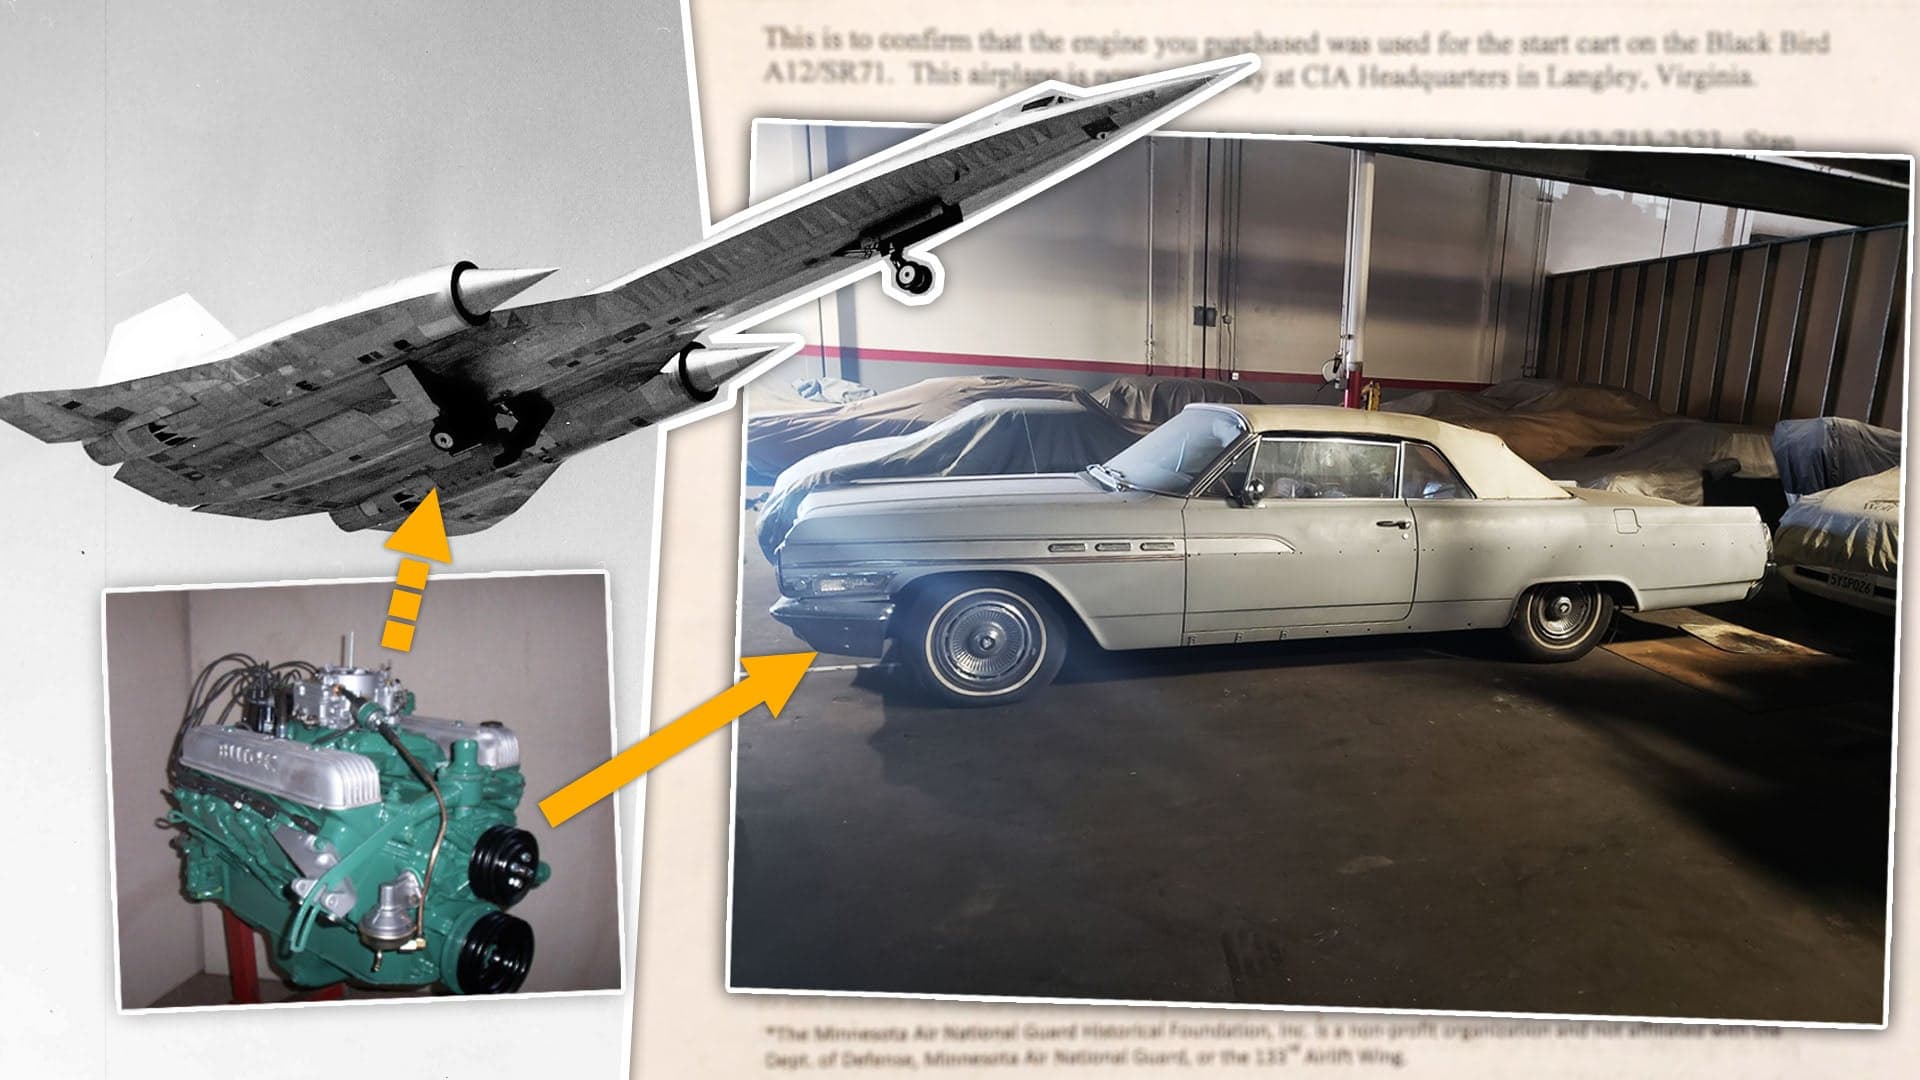 Cold War Engine Swap: Meet the 1963 Buick Wildcat With an A-12 Archangel Start-Cart Engine